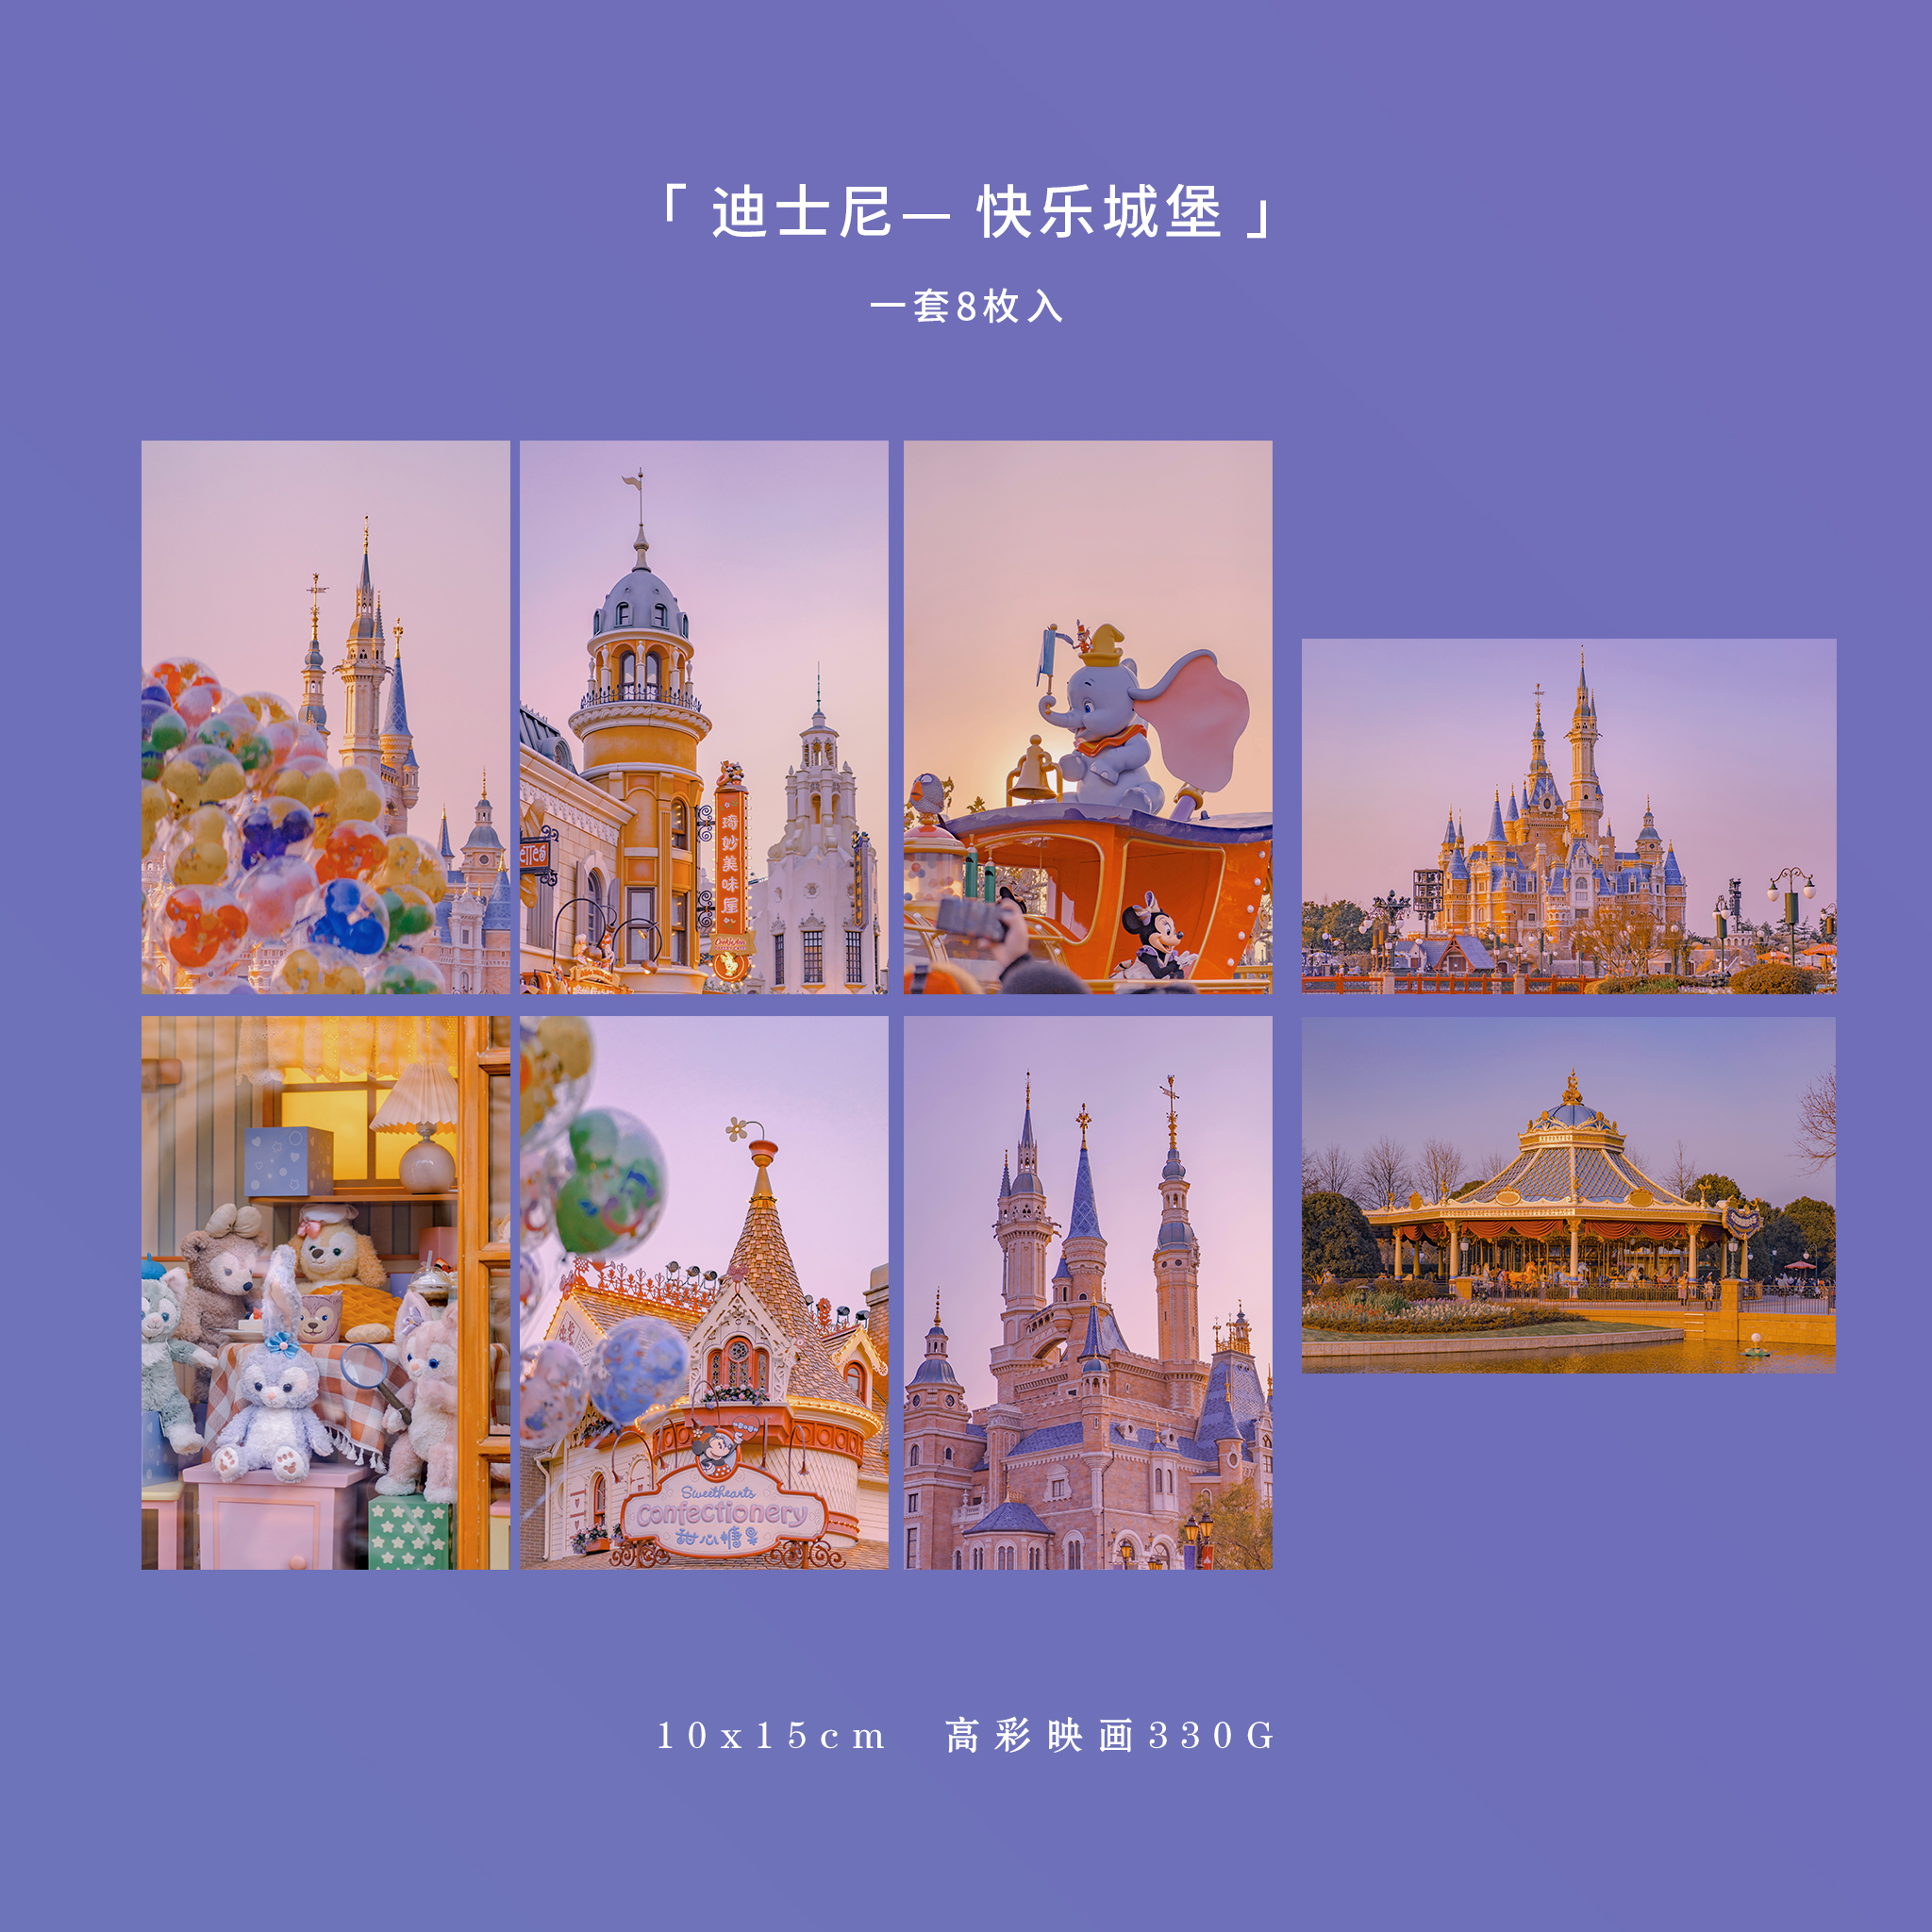 「迪士尼快乐城堡」摄影明信片 上海浪漫可爱娜玲贝儿互寄贺卡